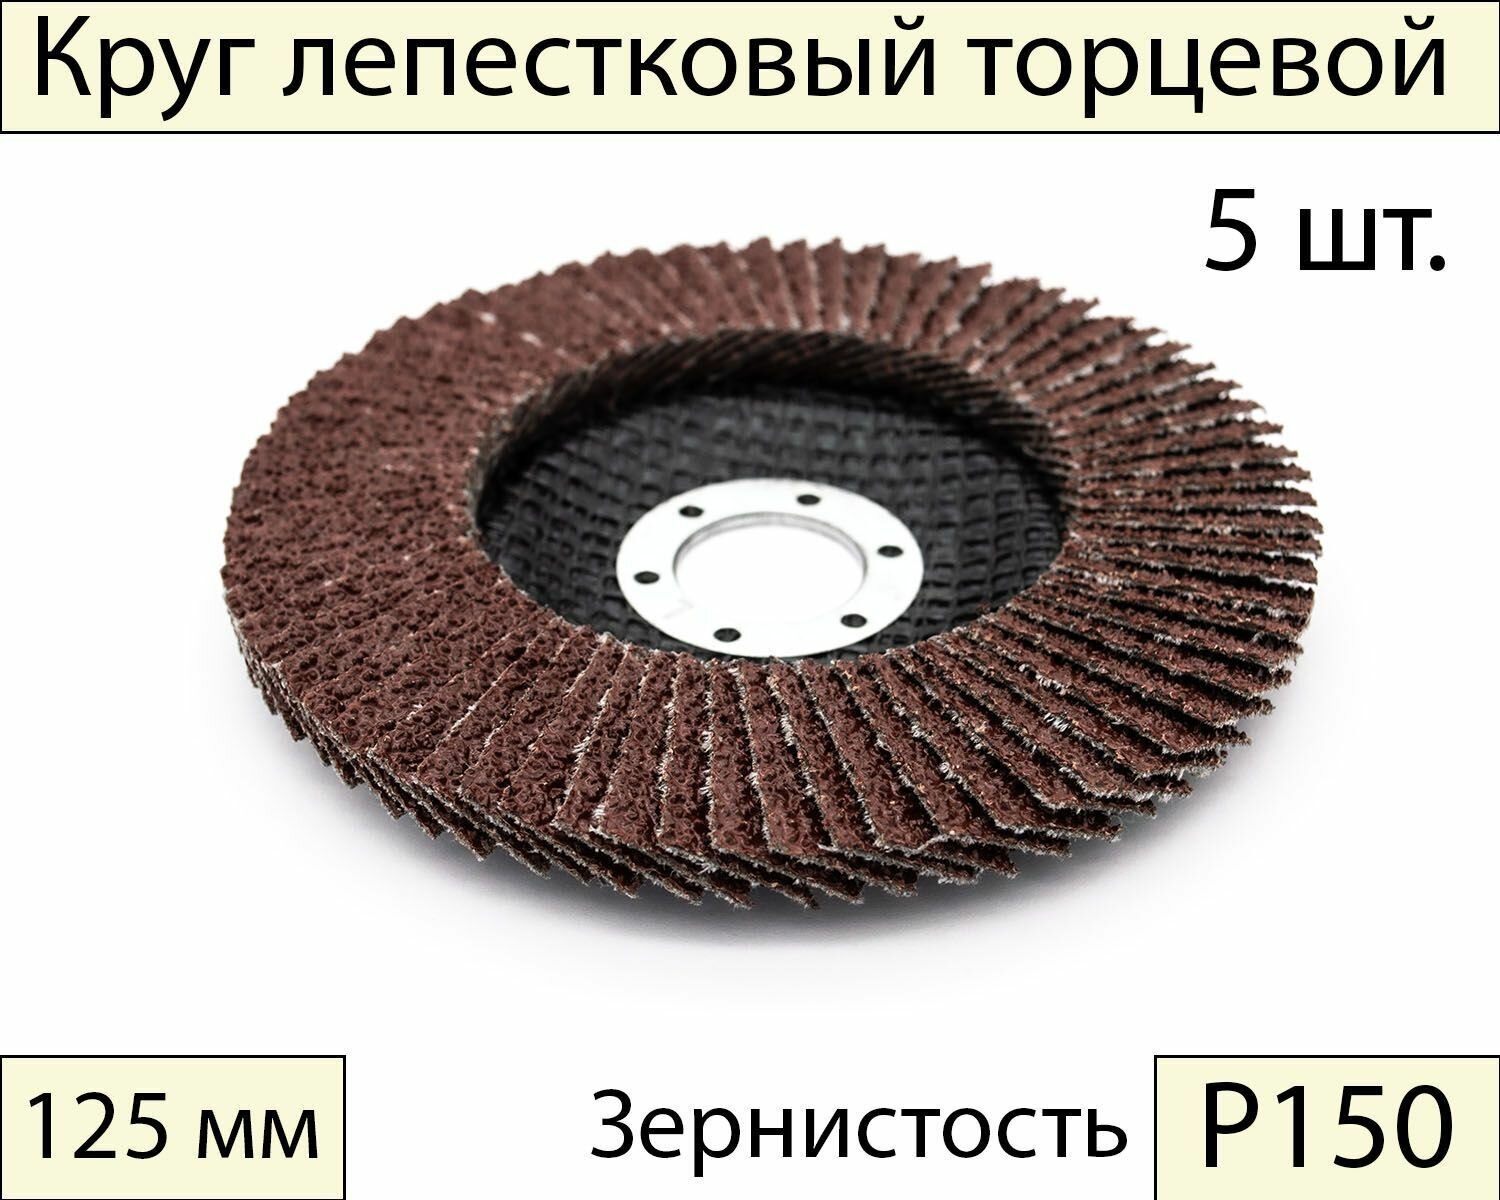 Круги шлифовальные абразивные / лепестковый торцевой диск 125 мм, Р150, 5 шт.